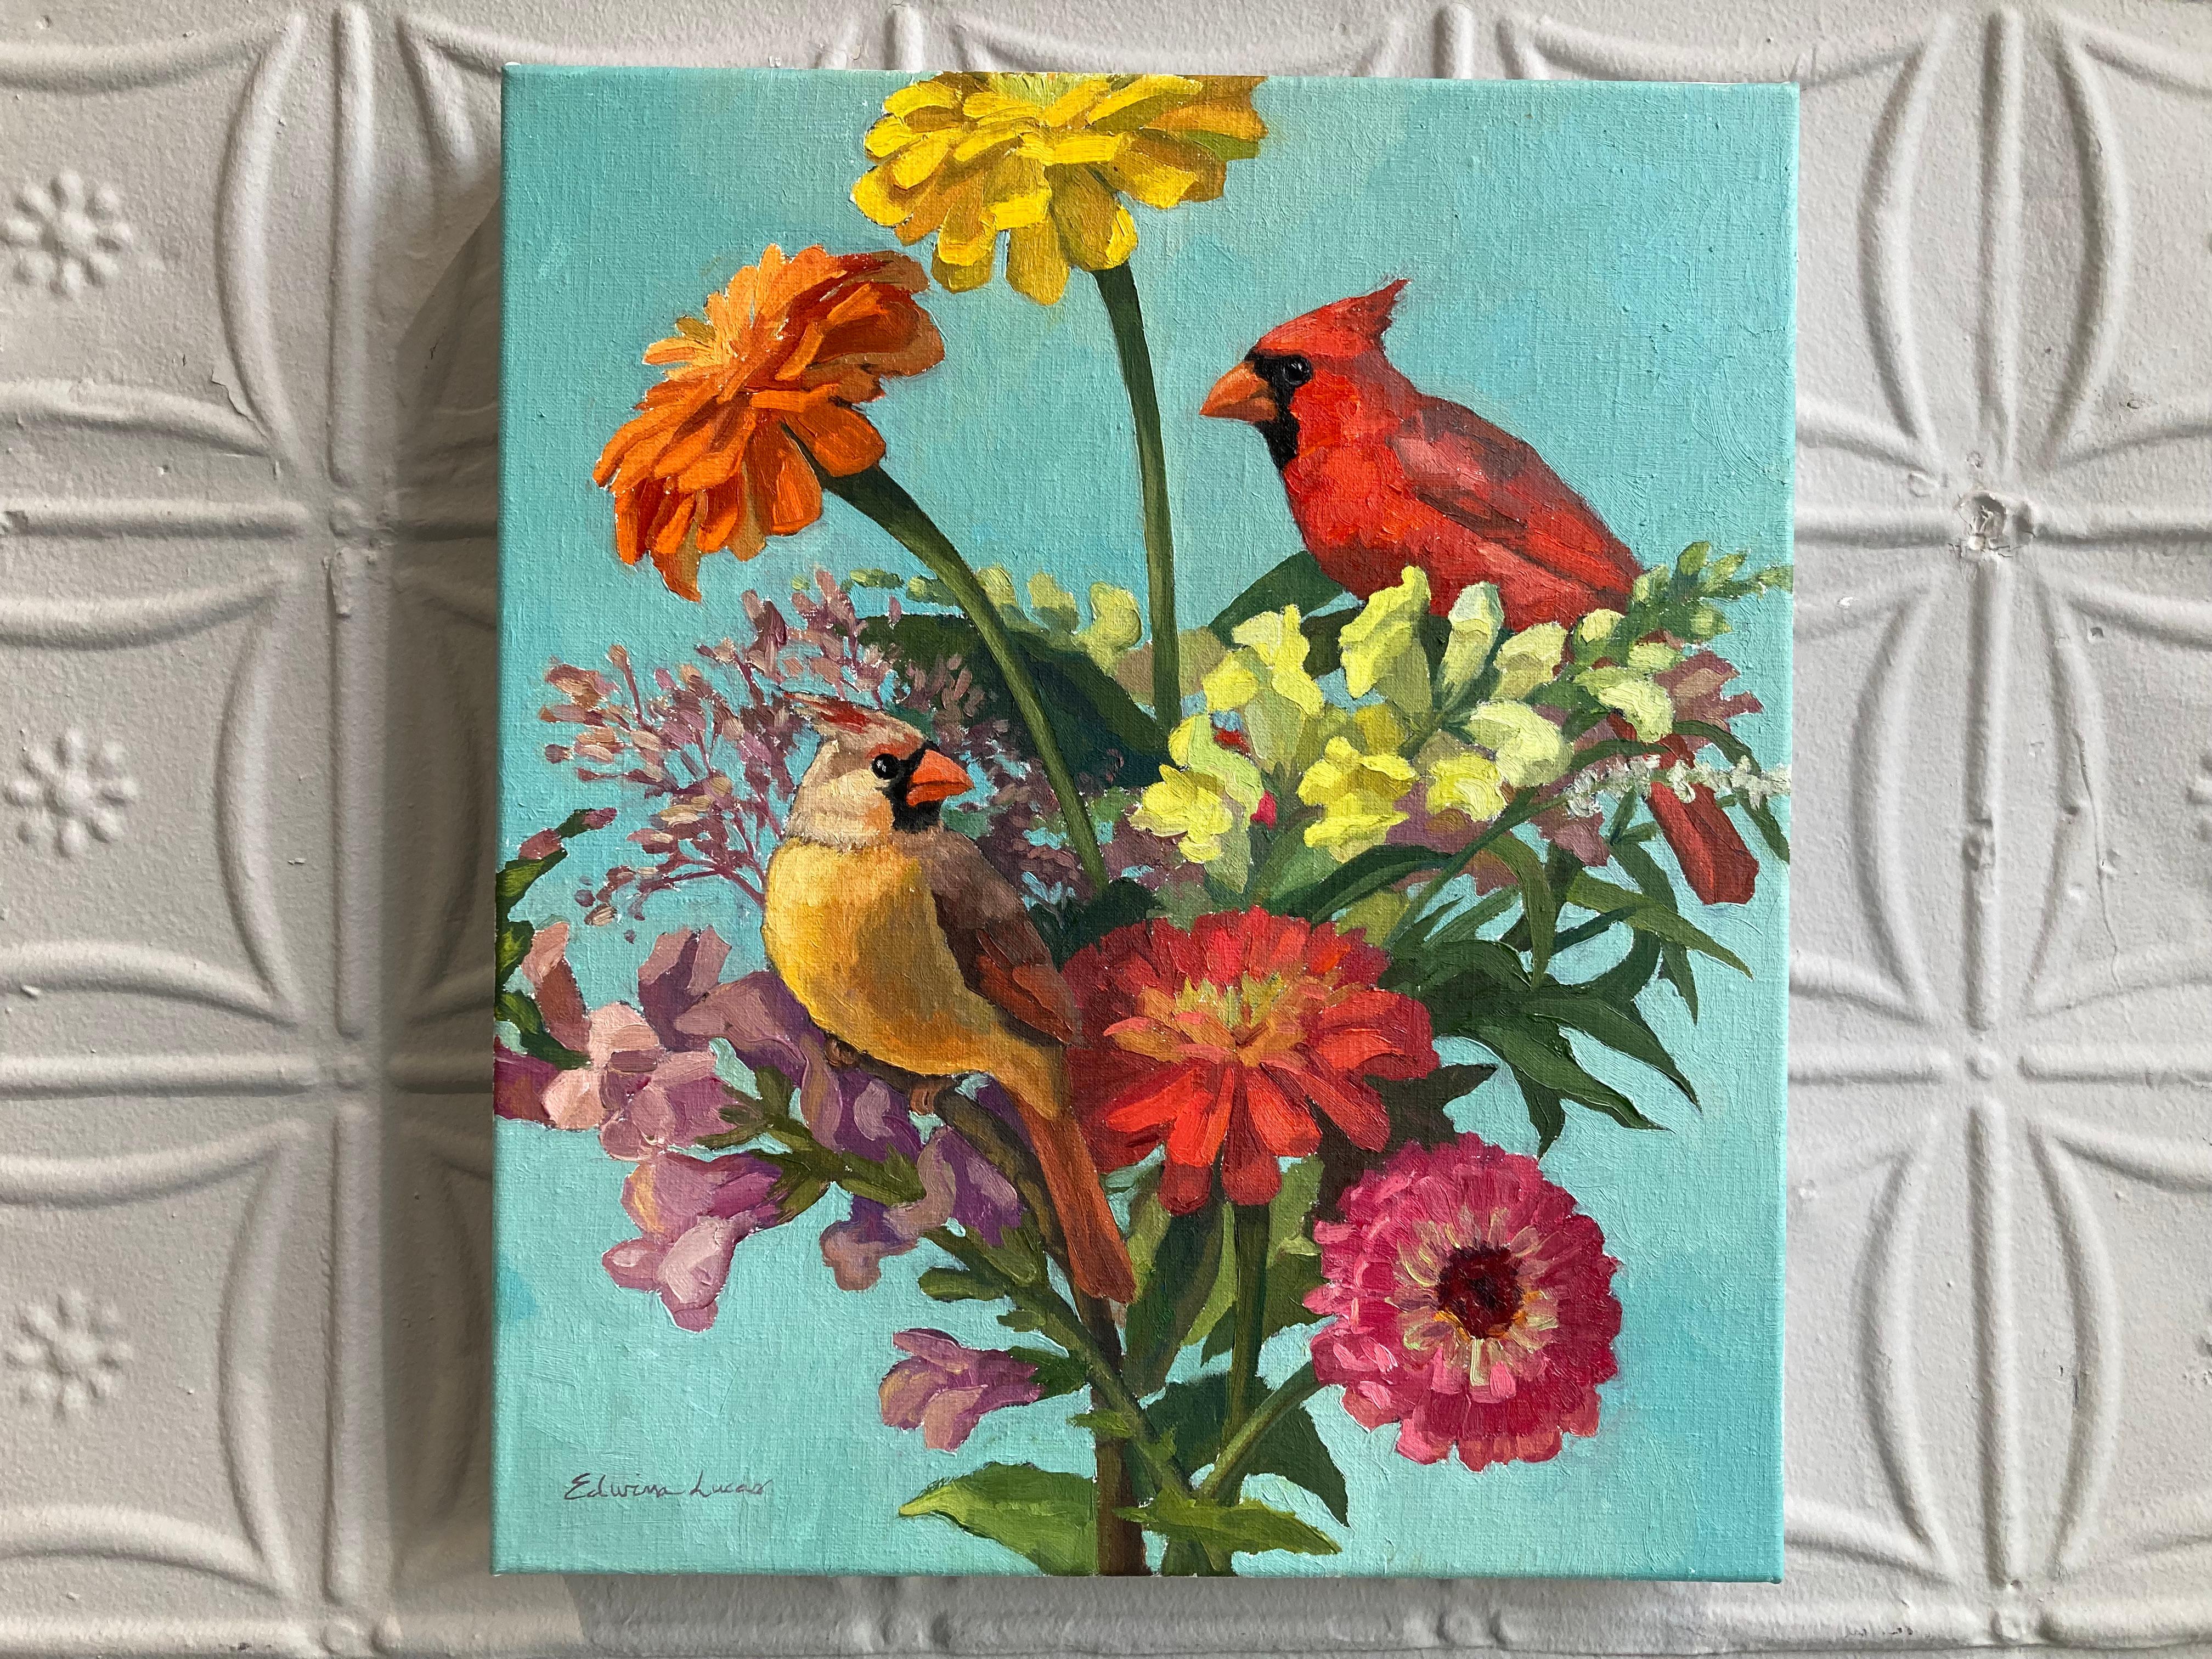 Deux oiseaux cardinaux sont assis sur des fleurs colorées dans cette peinture réaliste américaine. Un fond bleu abstrait permet au spectateur de se concentrer sur la nature morte. Lucas est passé maître dans l'art de distiller un monde désordonné